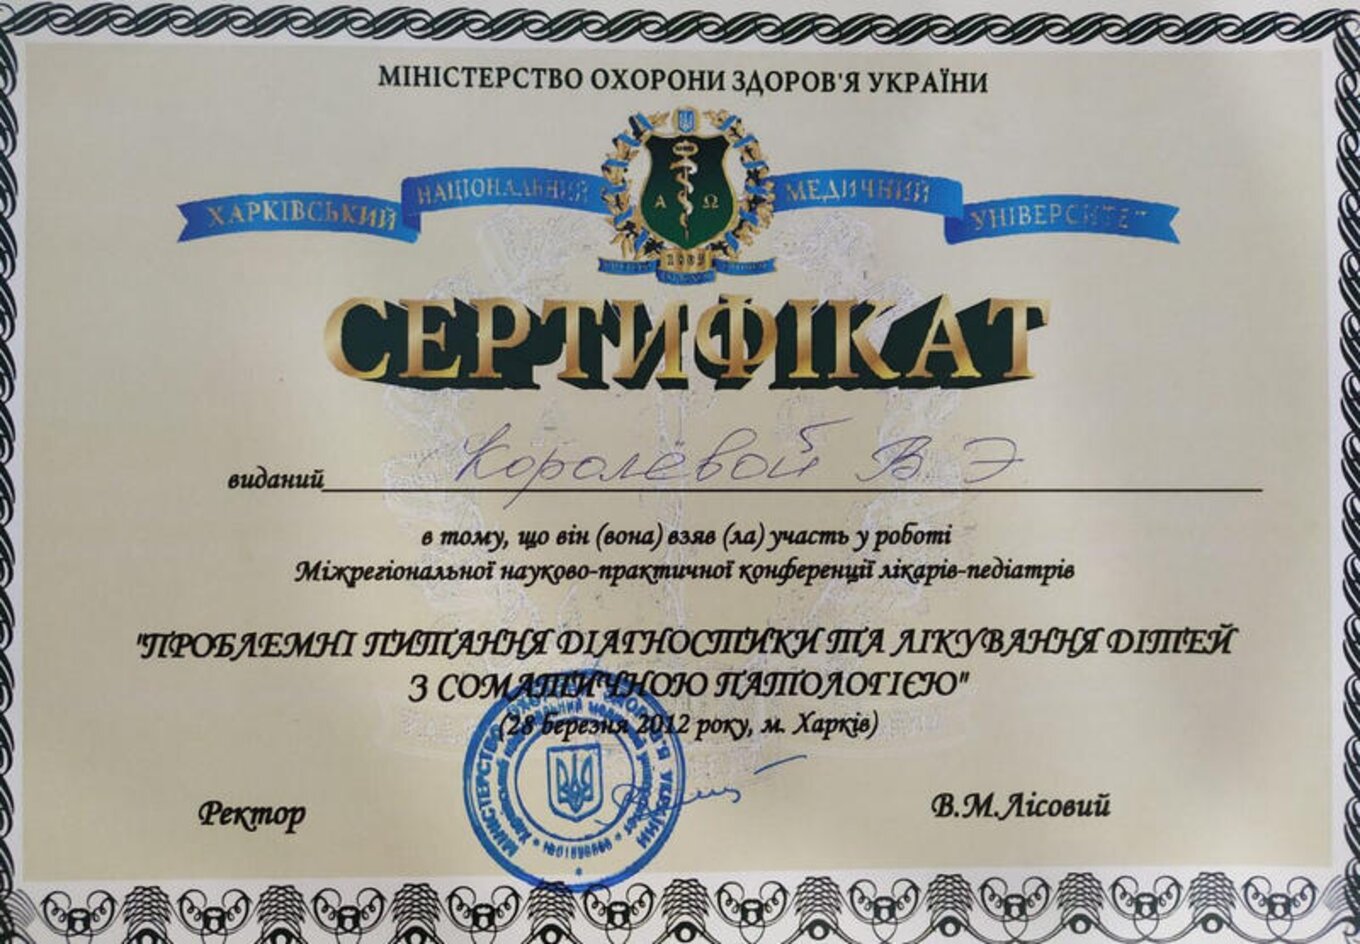 certificates/korolova-viktoriya-emanuyilivna/hemomedika-cert-koroleva-12.jpg